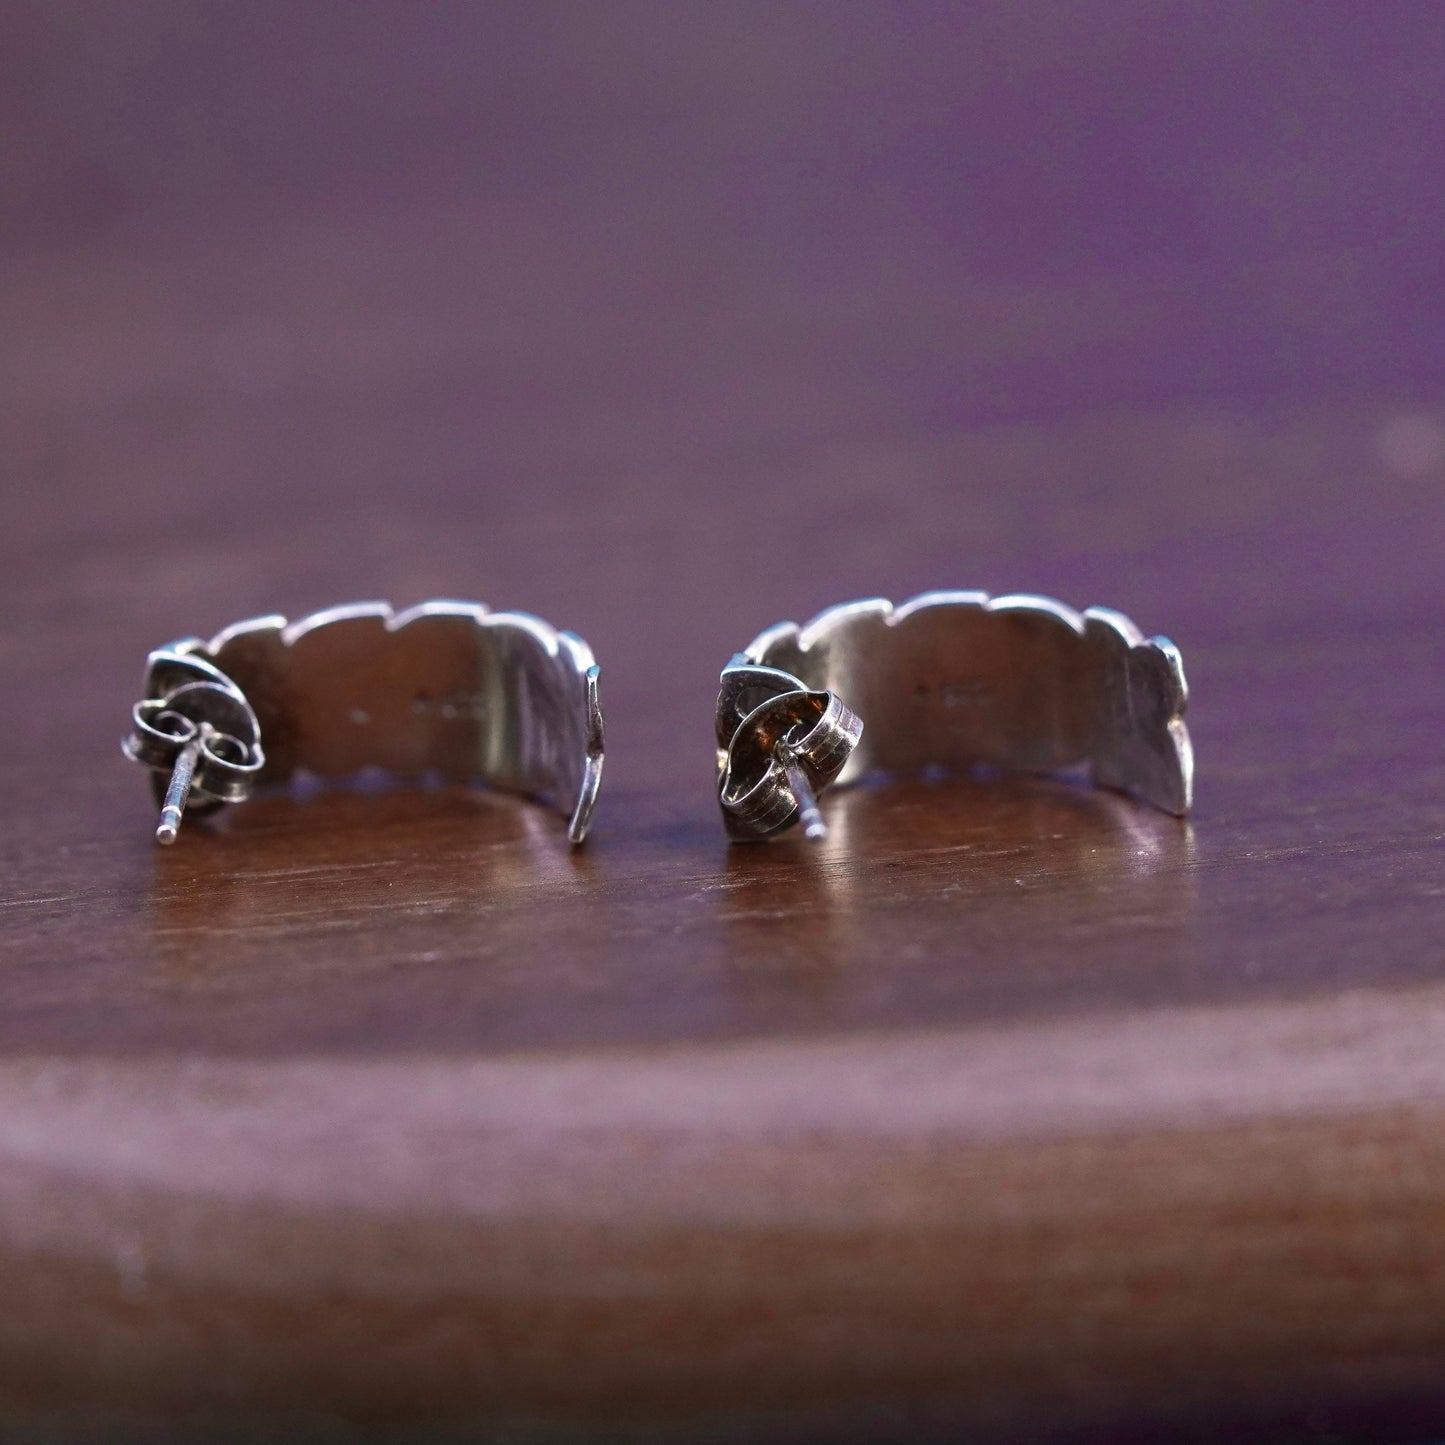 0.75”, southwestern Sterling Silver handmade Earrings 925 textured huggie studs